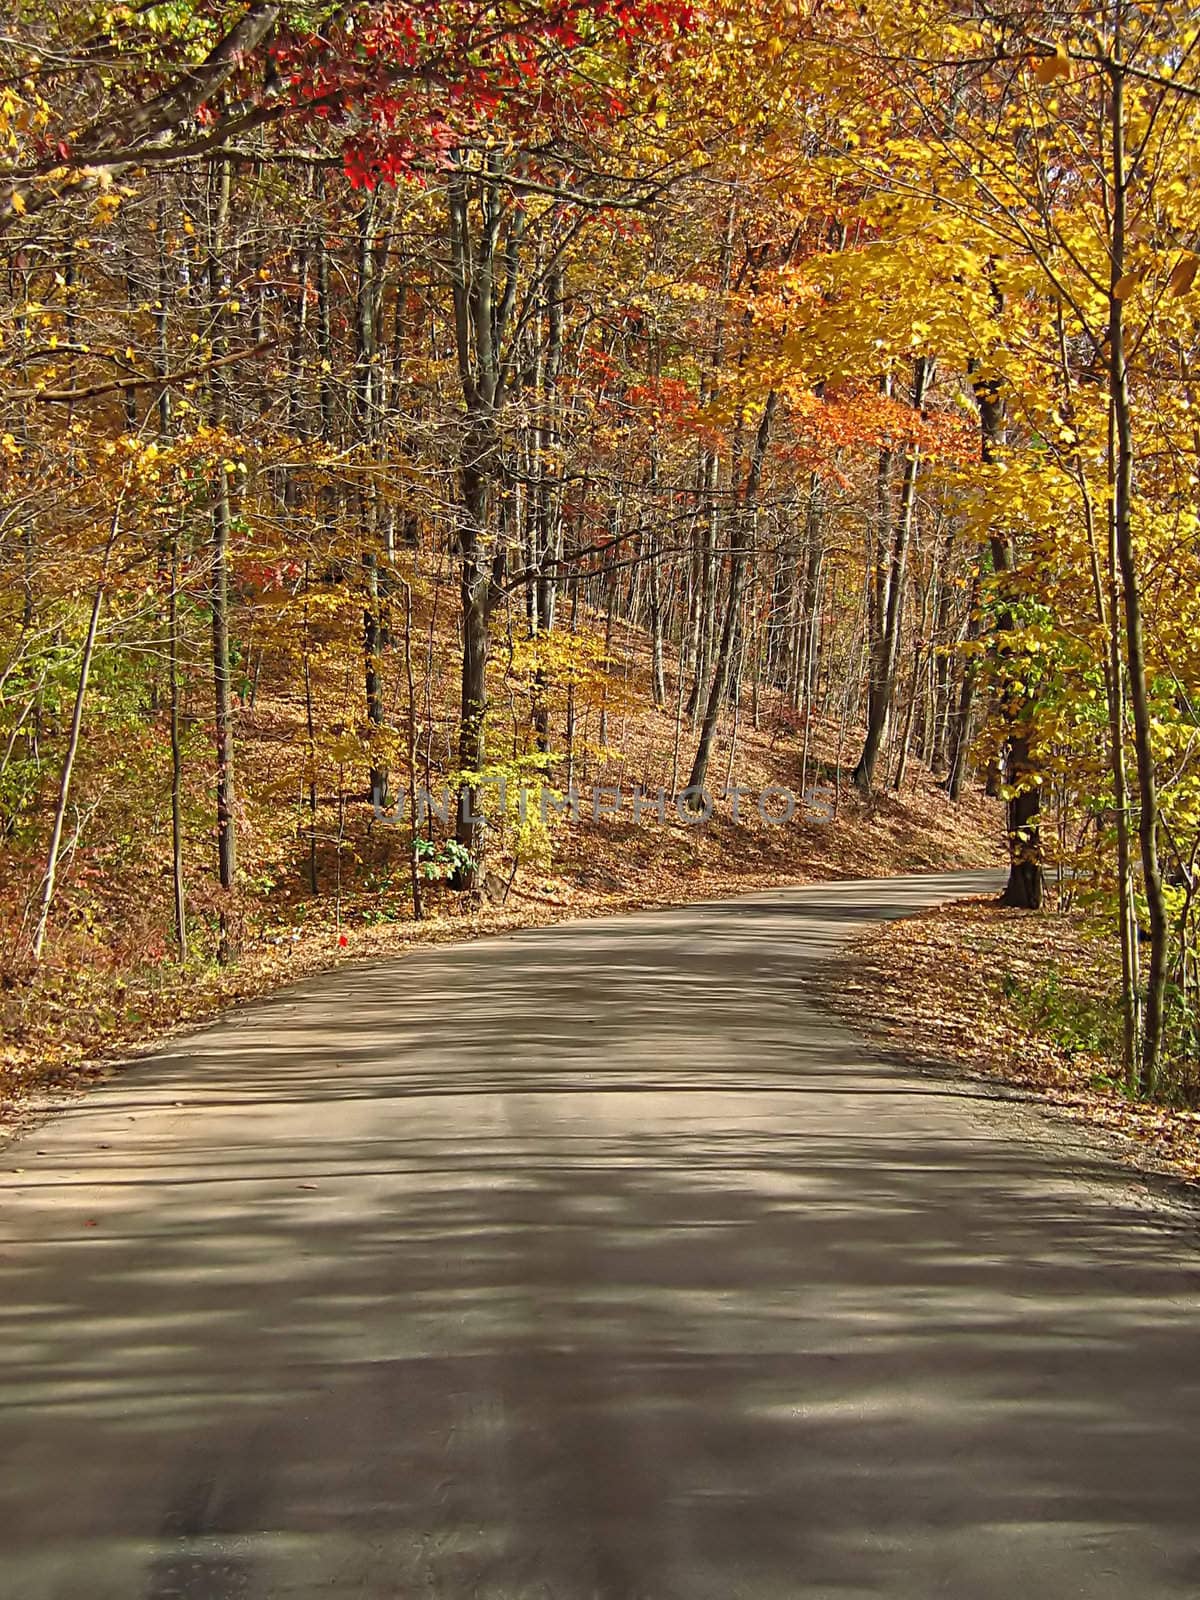 Autumn Road by llyr8